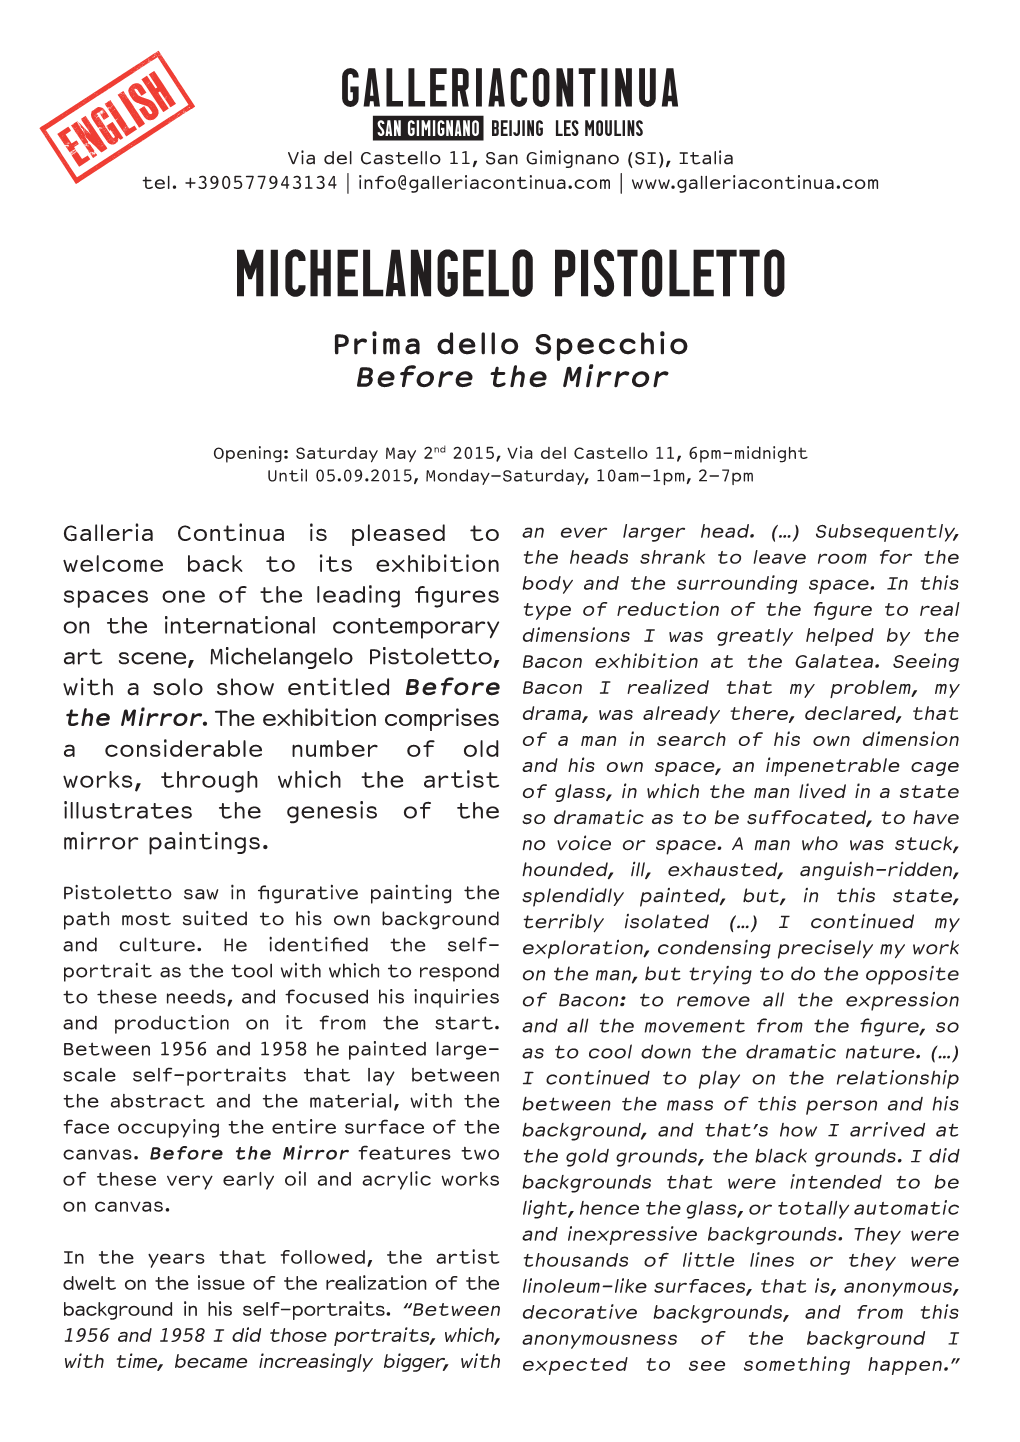 MICHELANGELO PISTOLETTO Prima Dello Specchio Before the Mirror